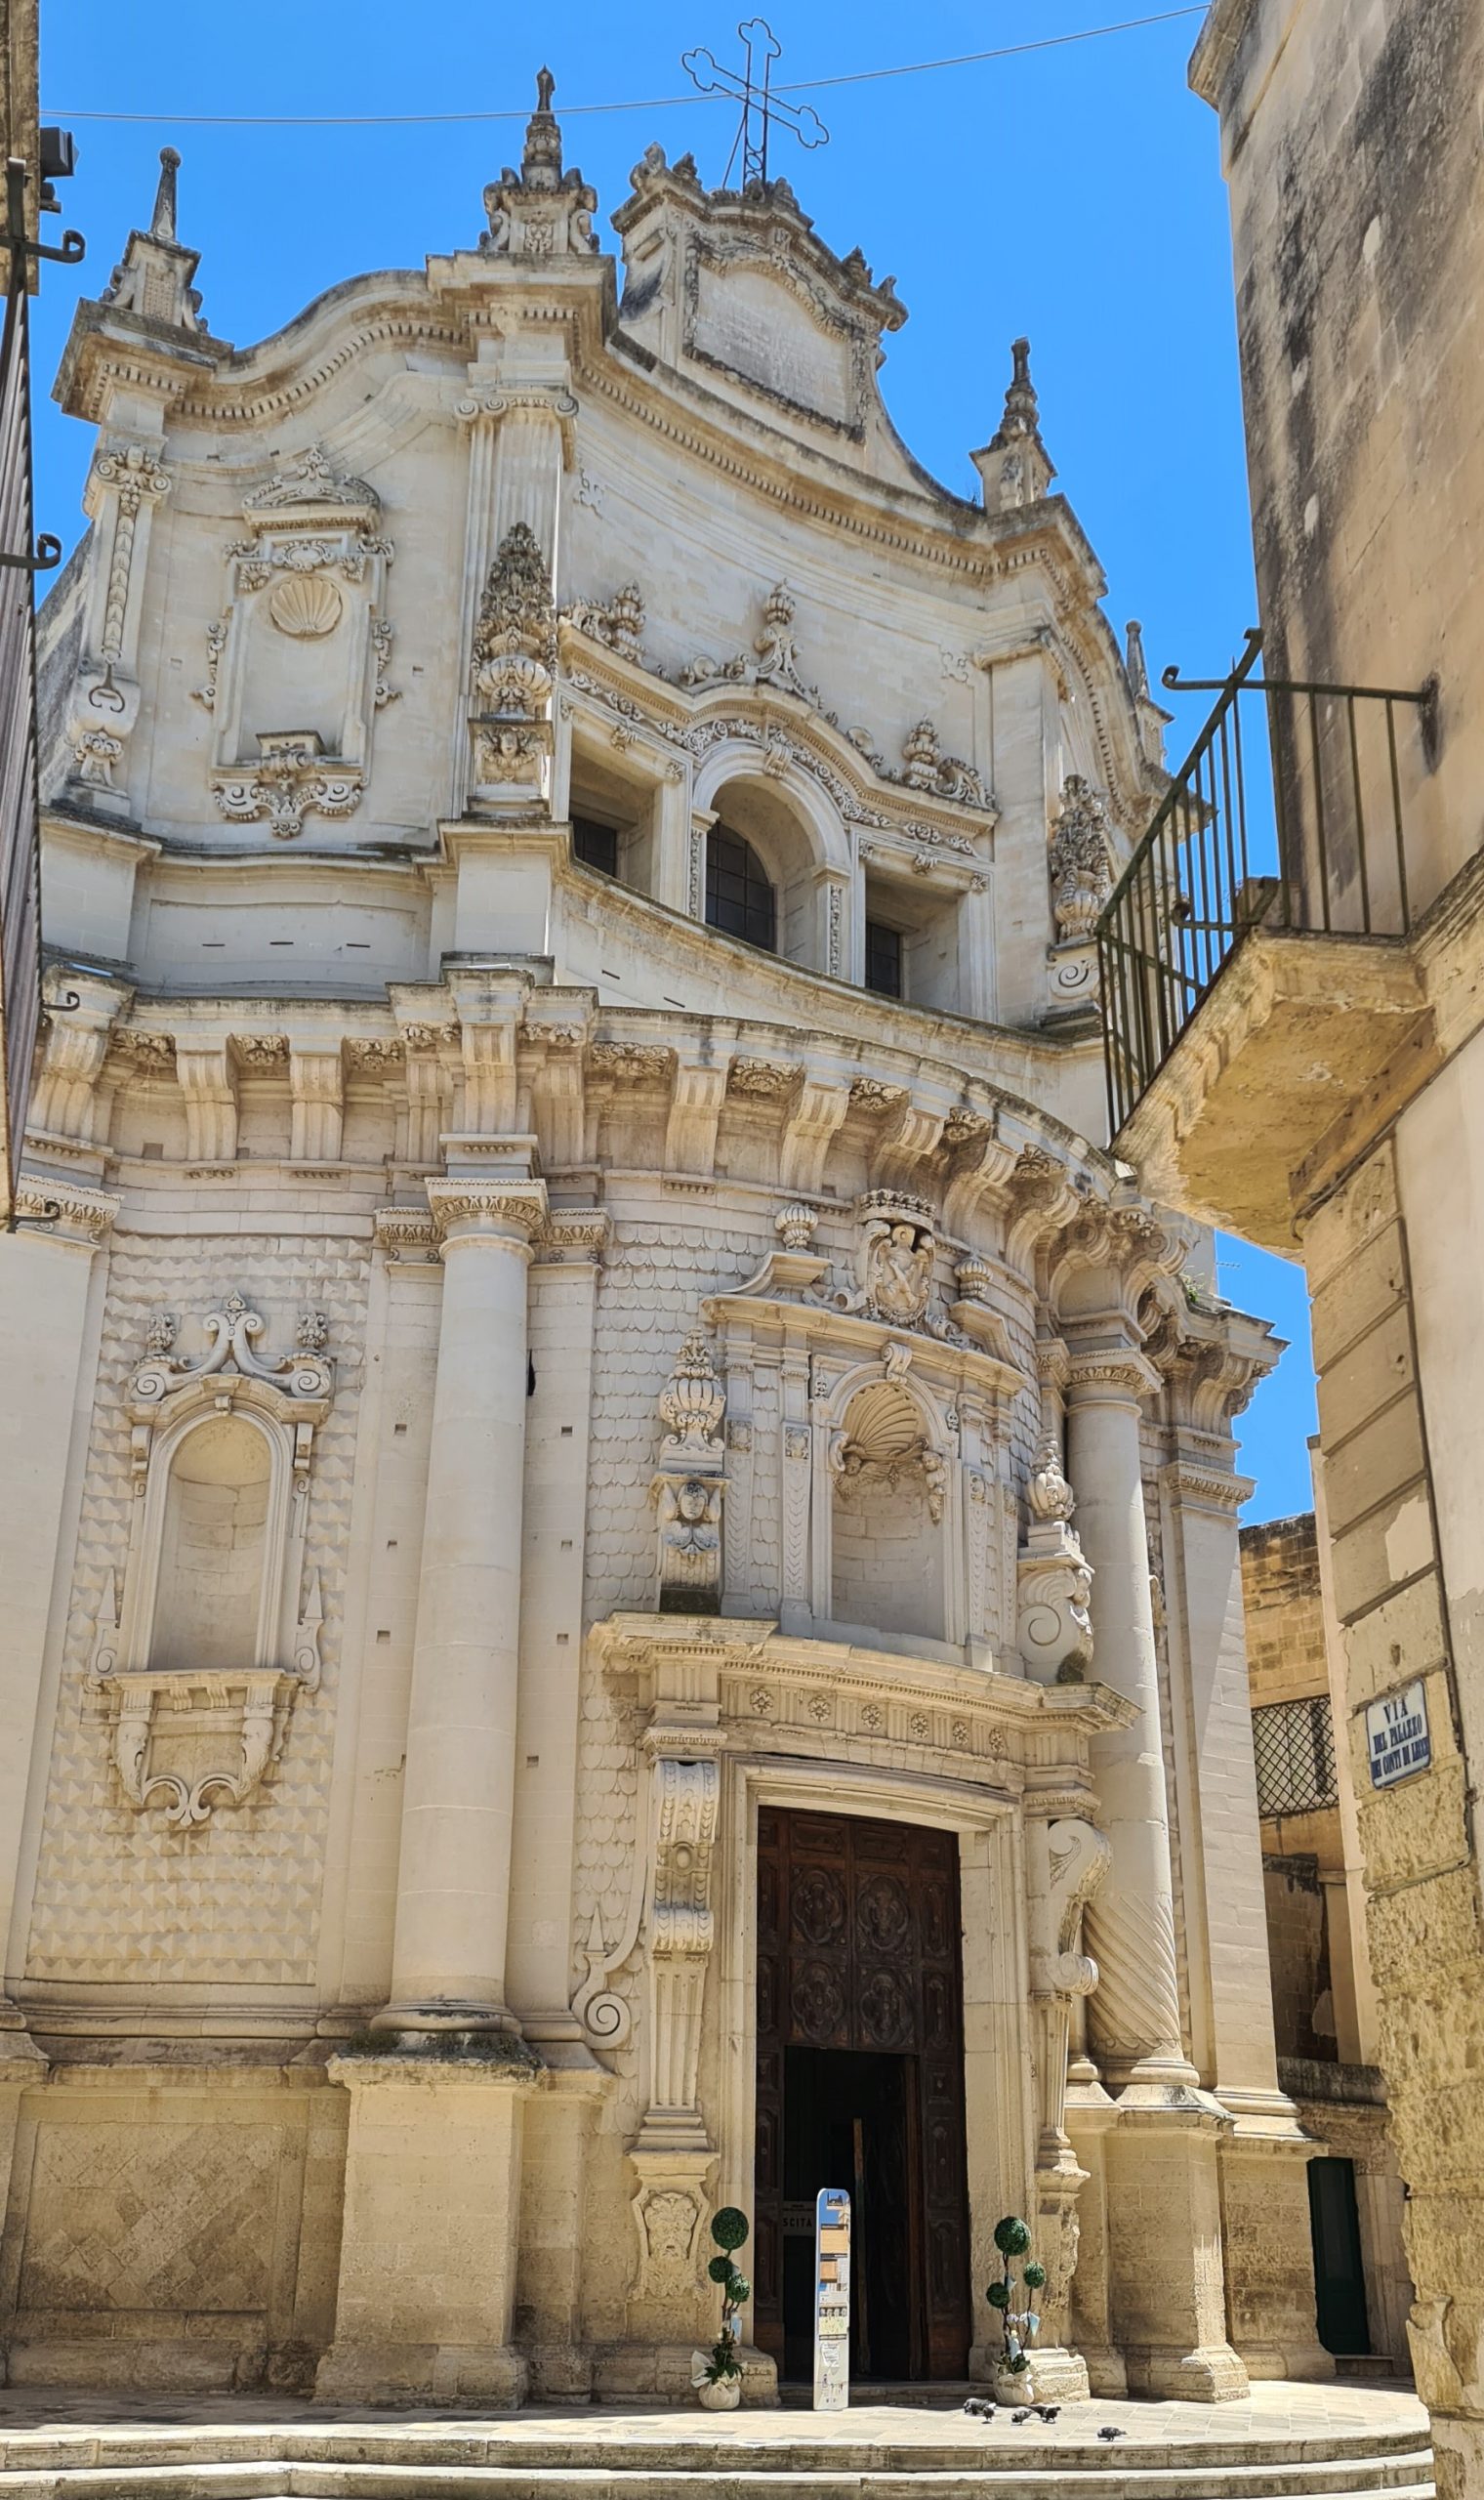 Nell'itinerario a Lecce scopriamo il barocco, come sulla Facciata della Chiesa di San Matteo, una delle più belle di Lecce